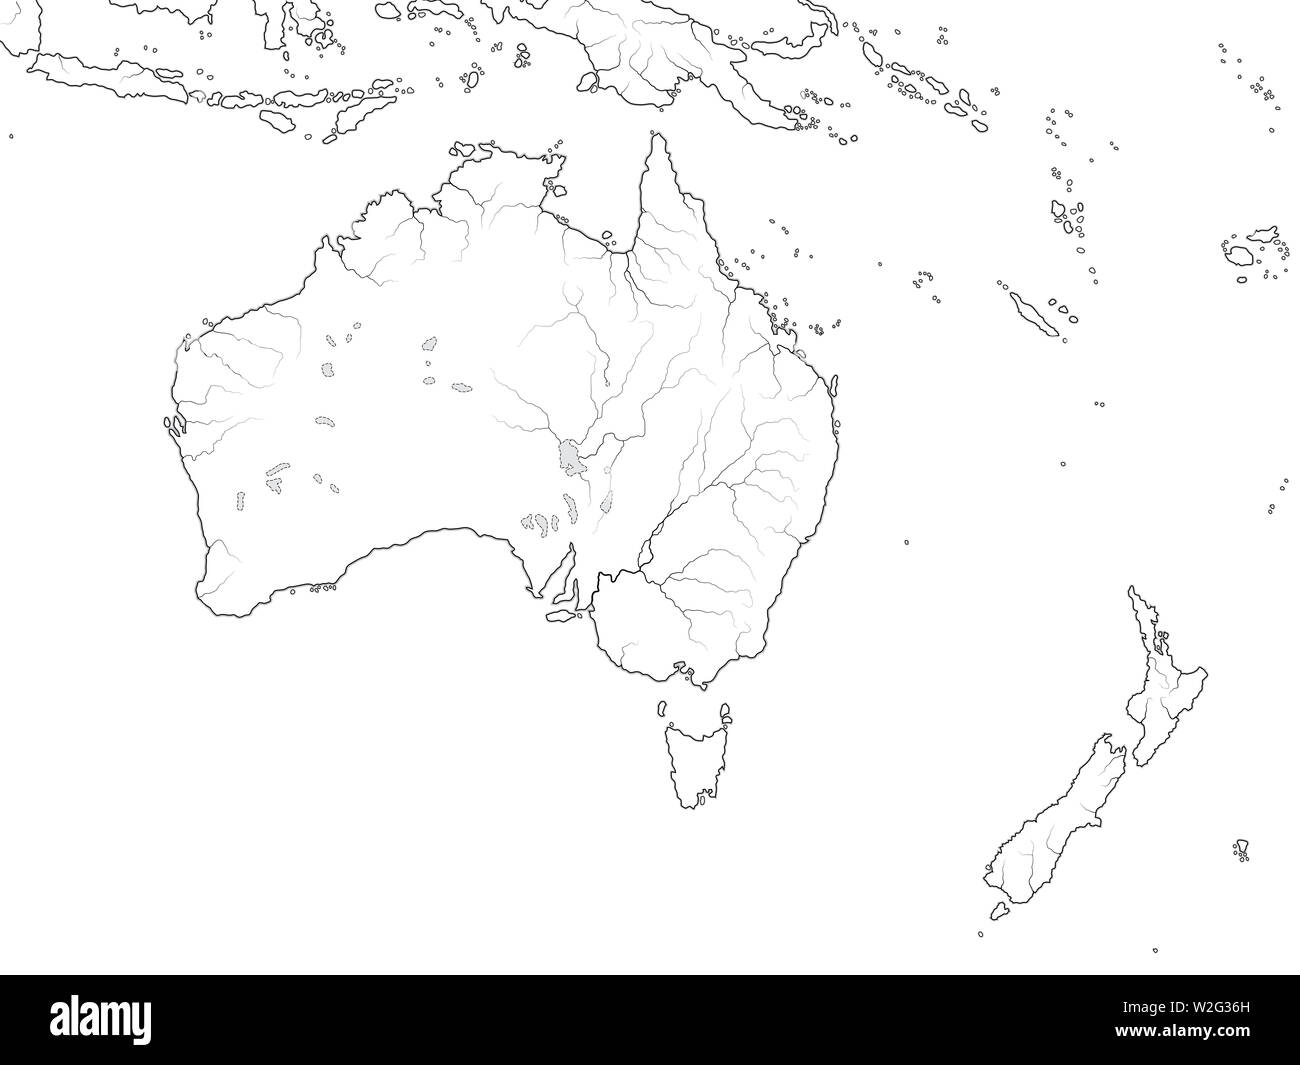 Carte du monde de l'Australie continent : l'Australie, Nouvelle-Zélande, Océanie, Micronésie, Mélanésie, Polynésie, Océan Pacifique. Carte géographique avec le littoral. Banque D'Images